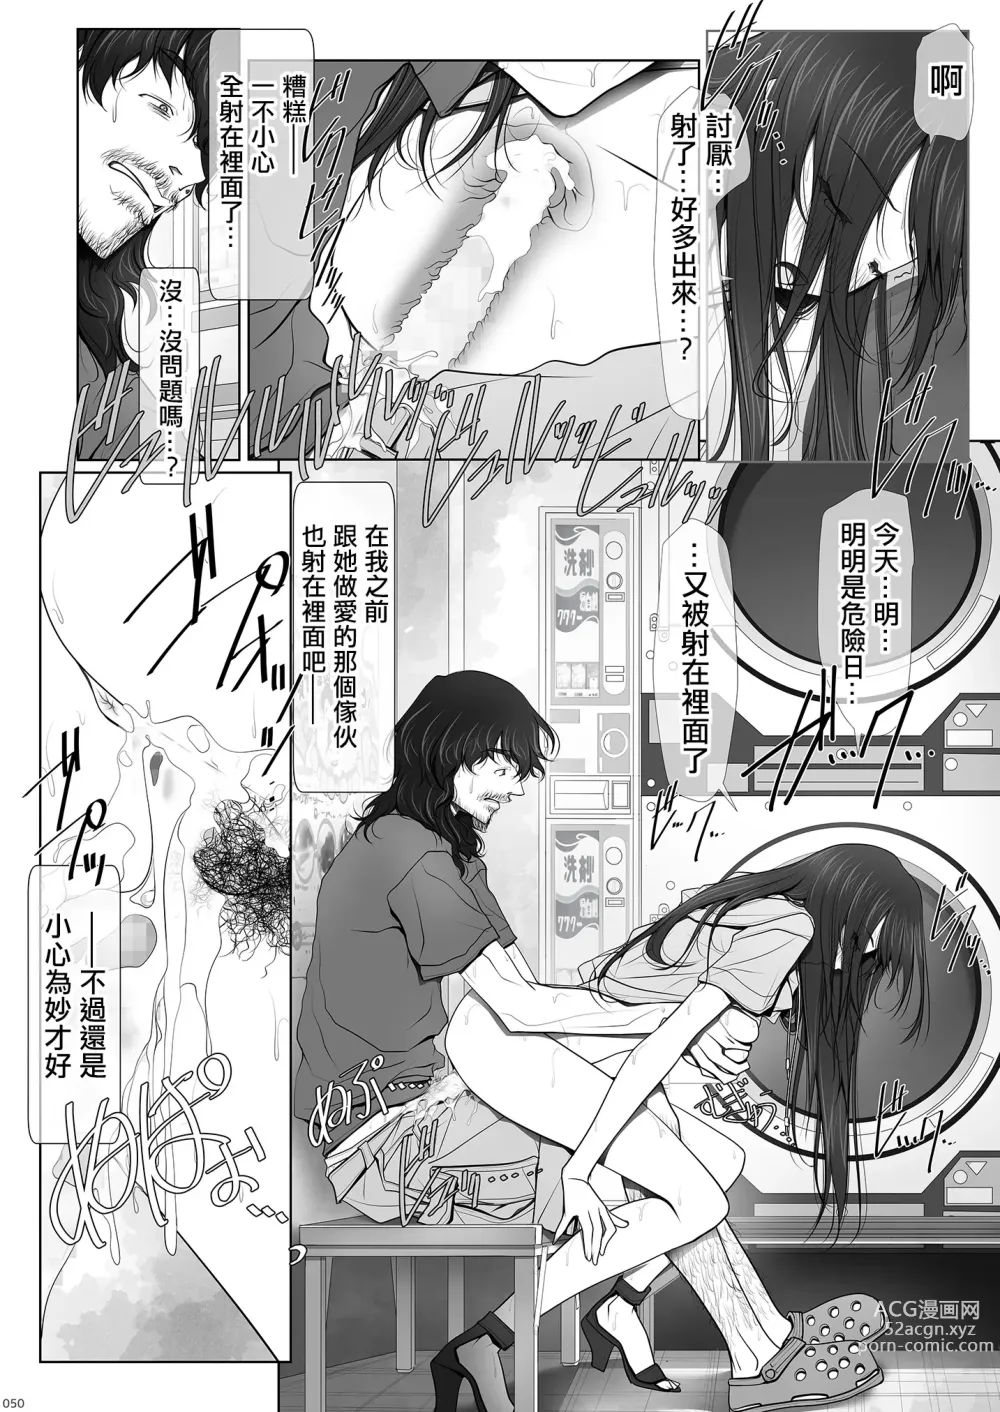 Page 50 of doujinshi 彼女がパンツを穿かない理由｜她不穿內褲的理由